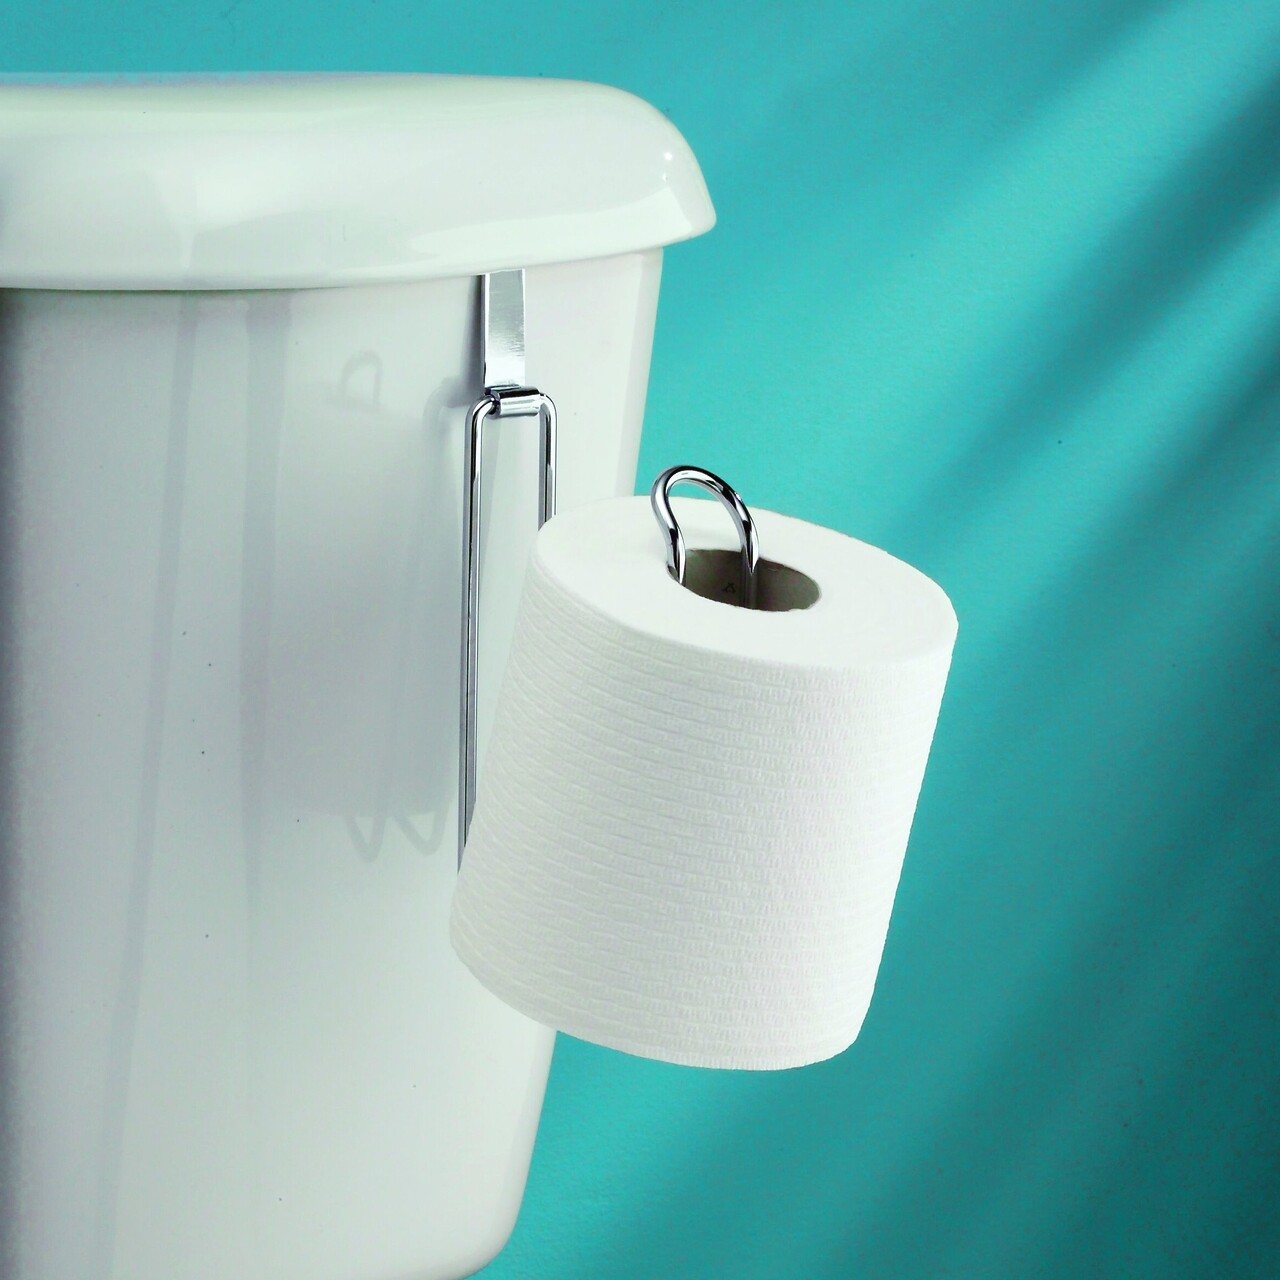 Metalo WC-papírtartó, iDesign, 11,5x3x19 cm, acél